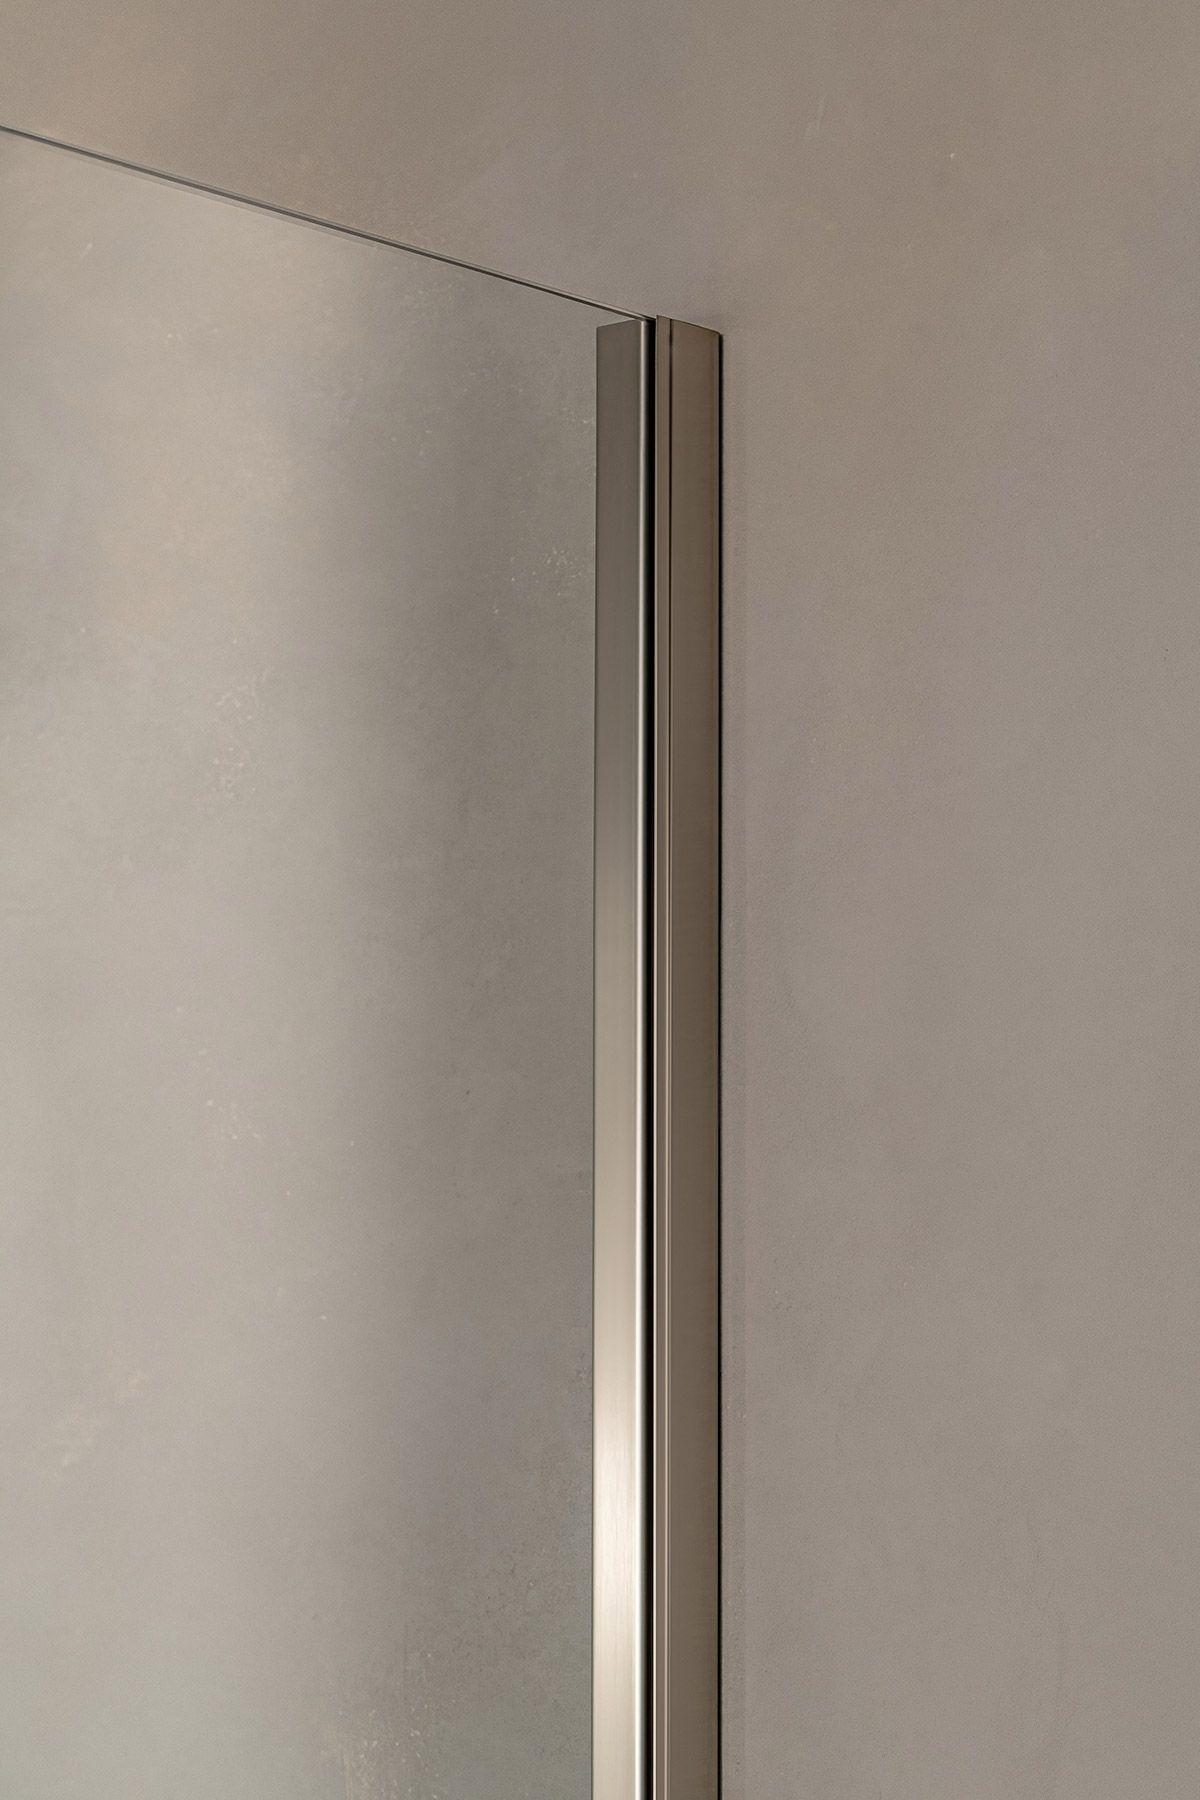 Ultra-thin wall profile